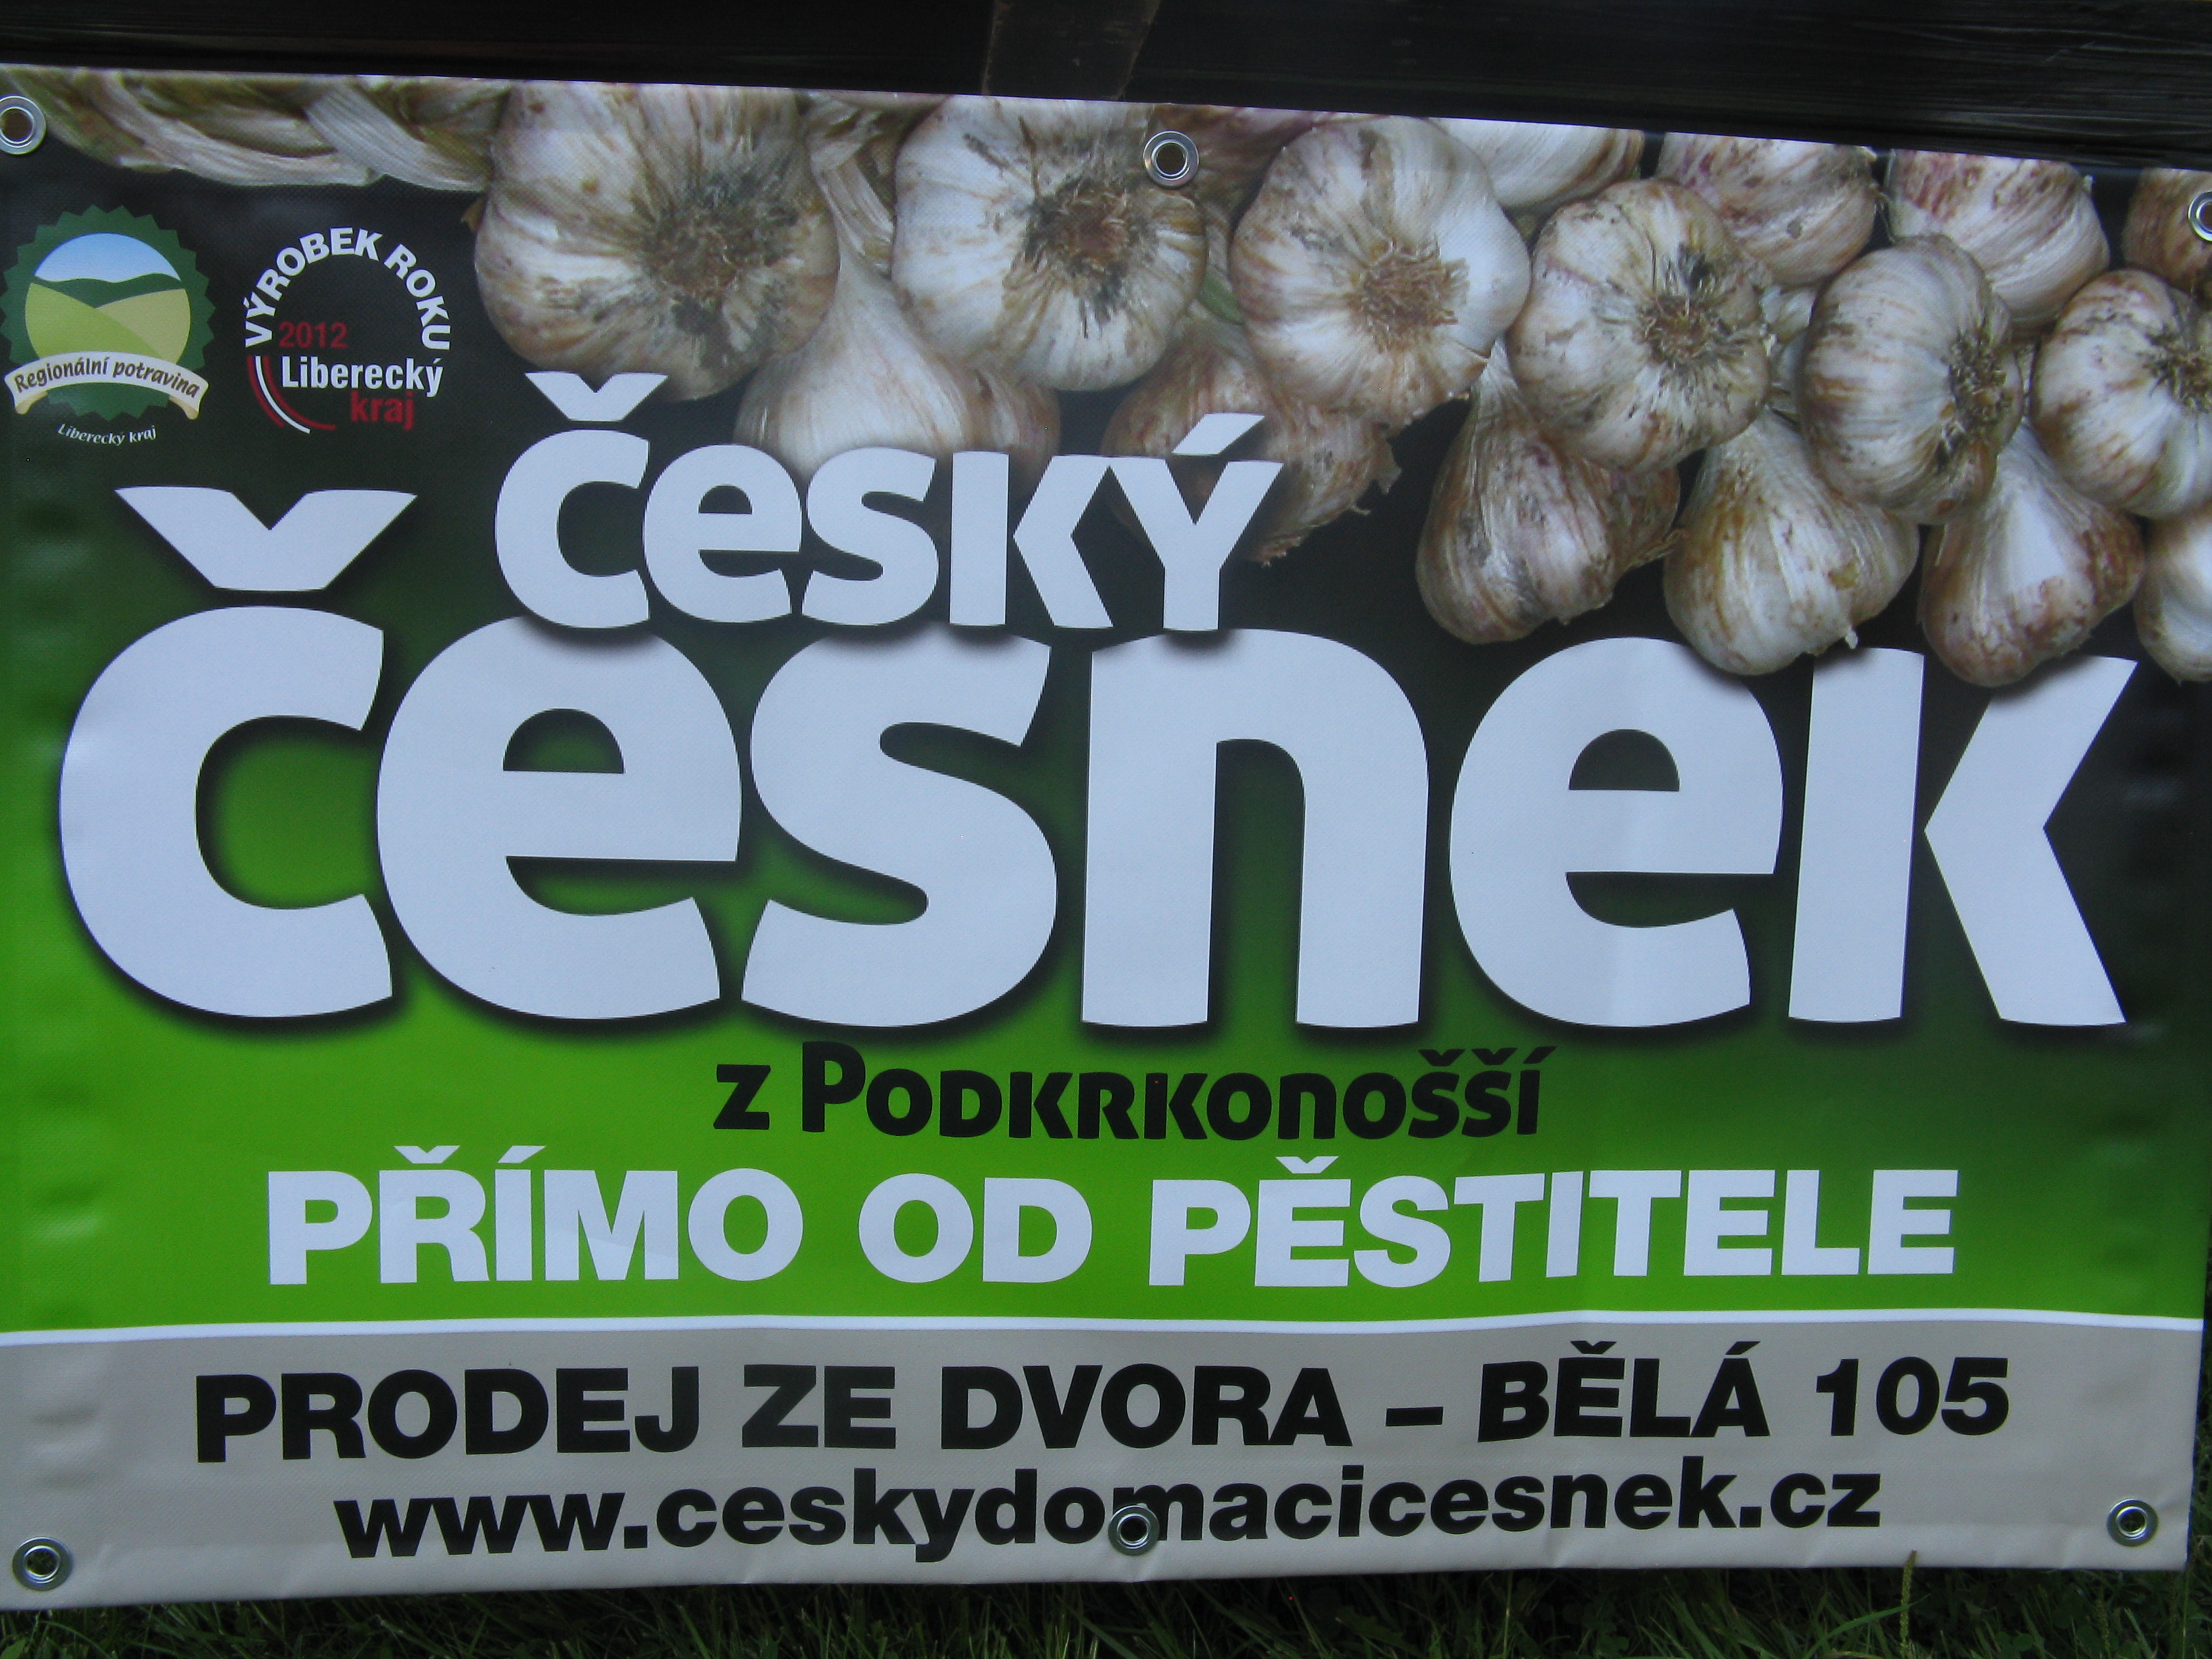 Český česnek z Podkrkonoší